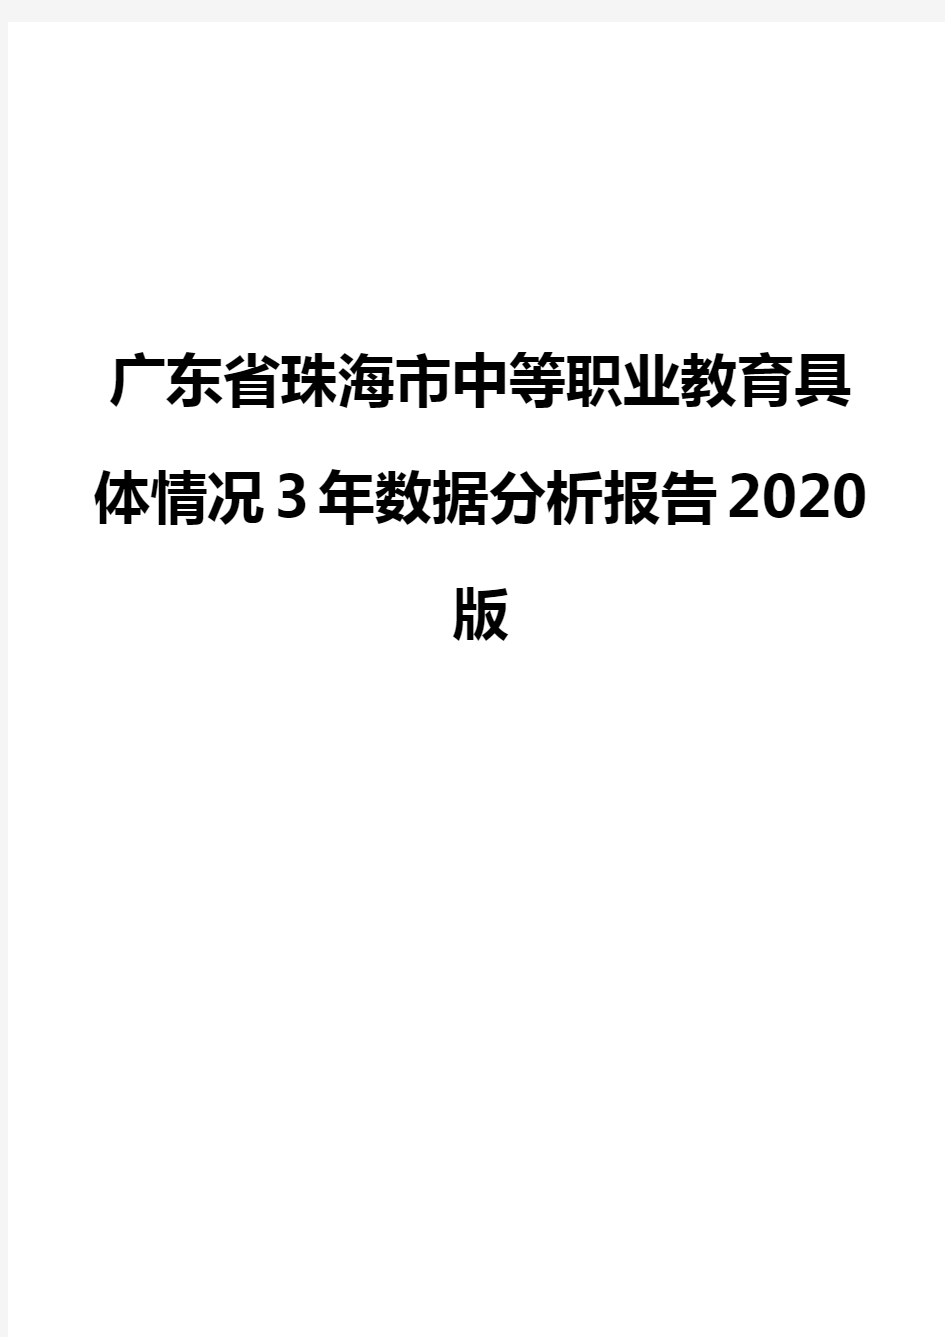 广东省珠海市中等职业教育具体情况3年数据分析报告2020版